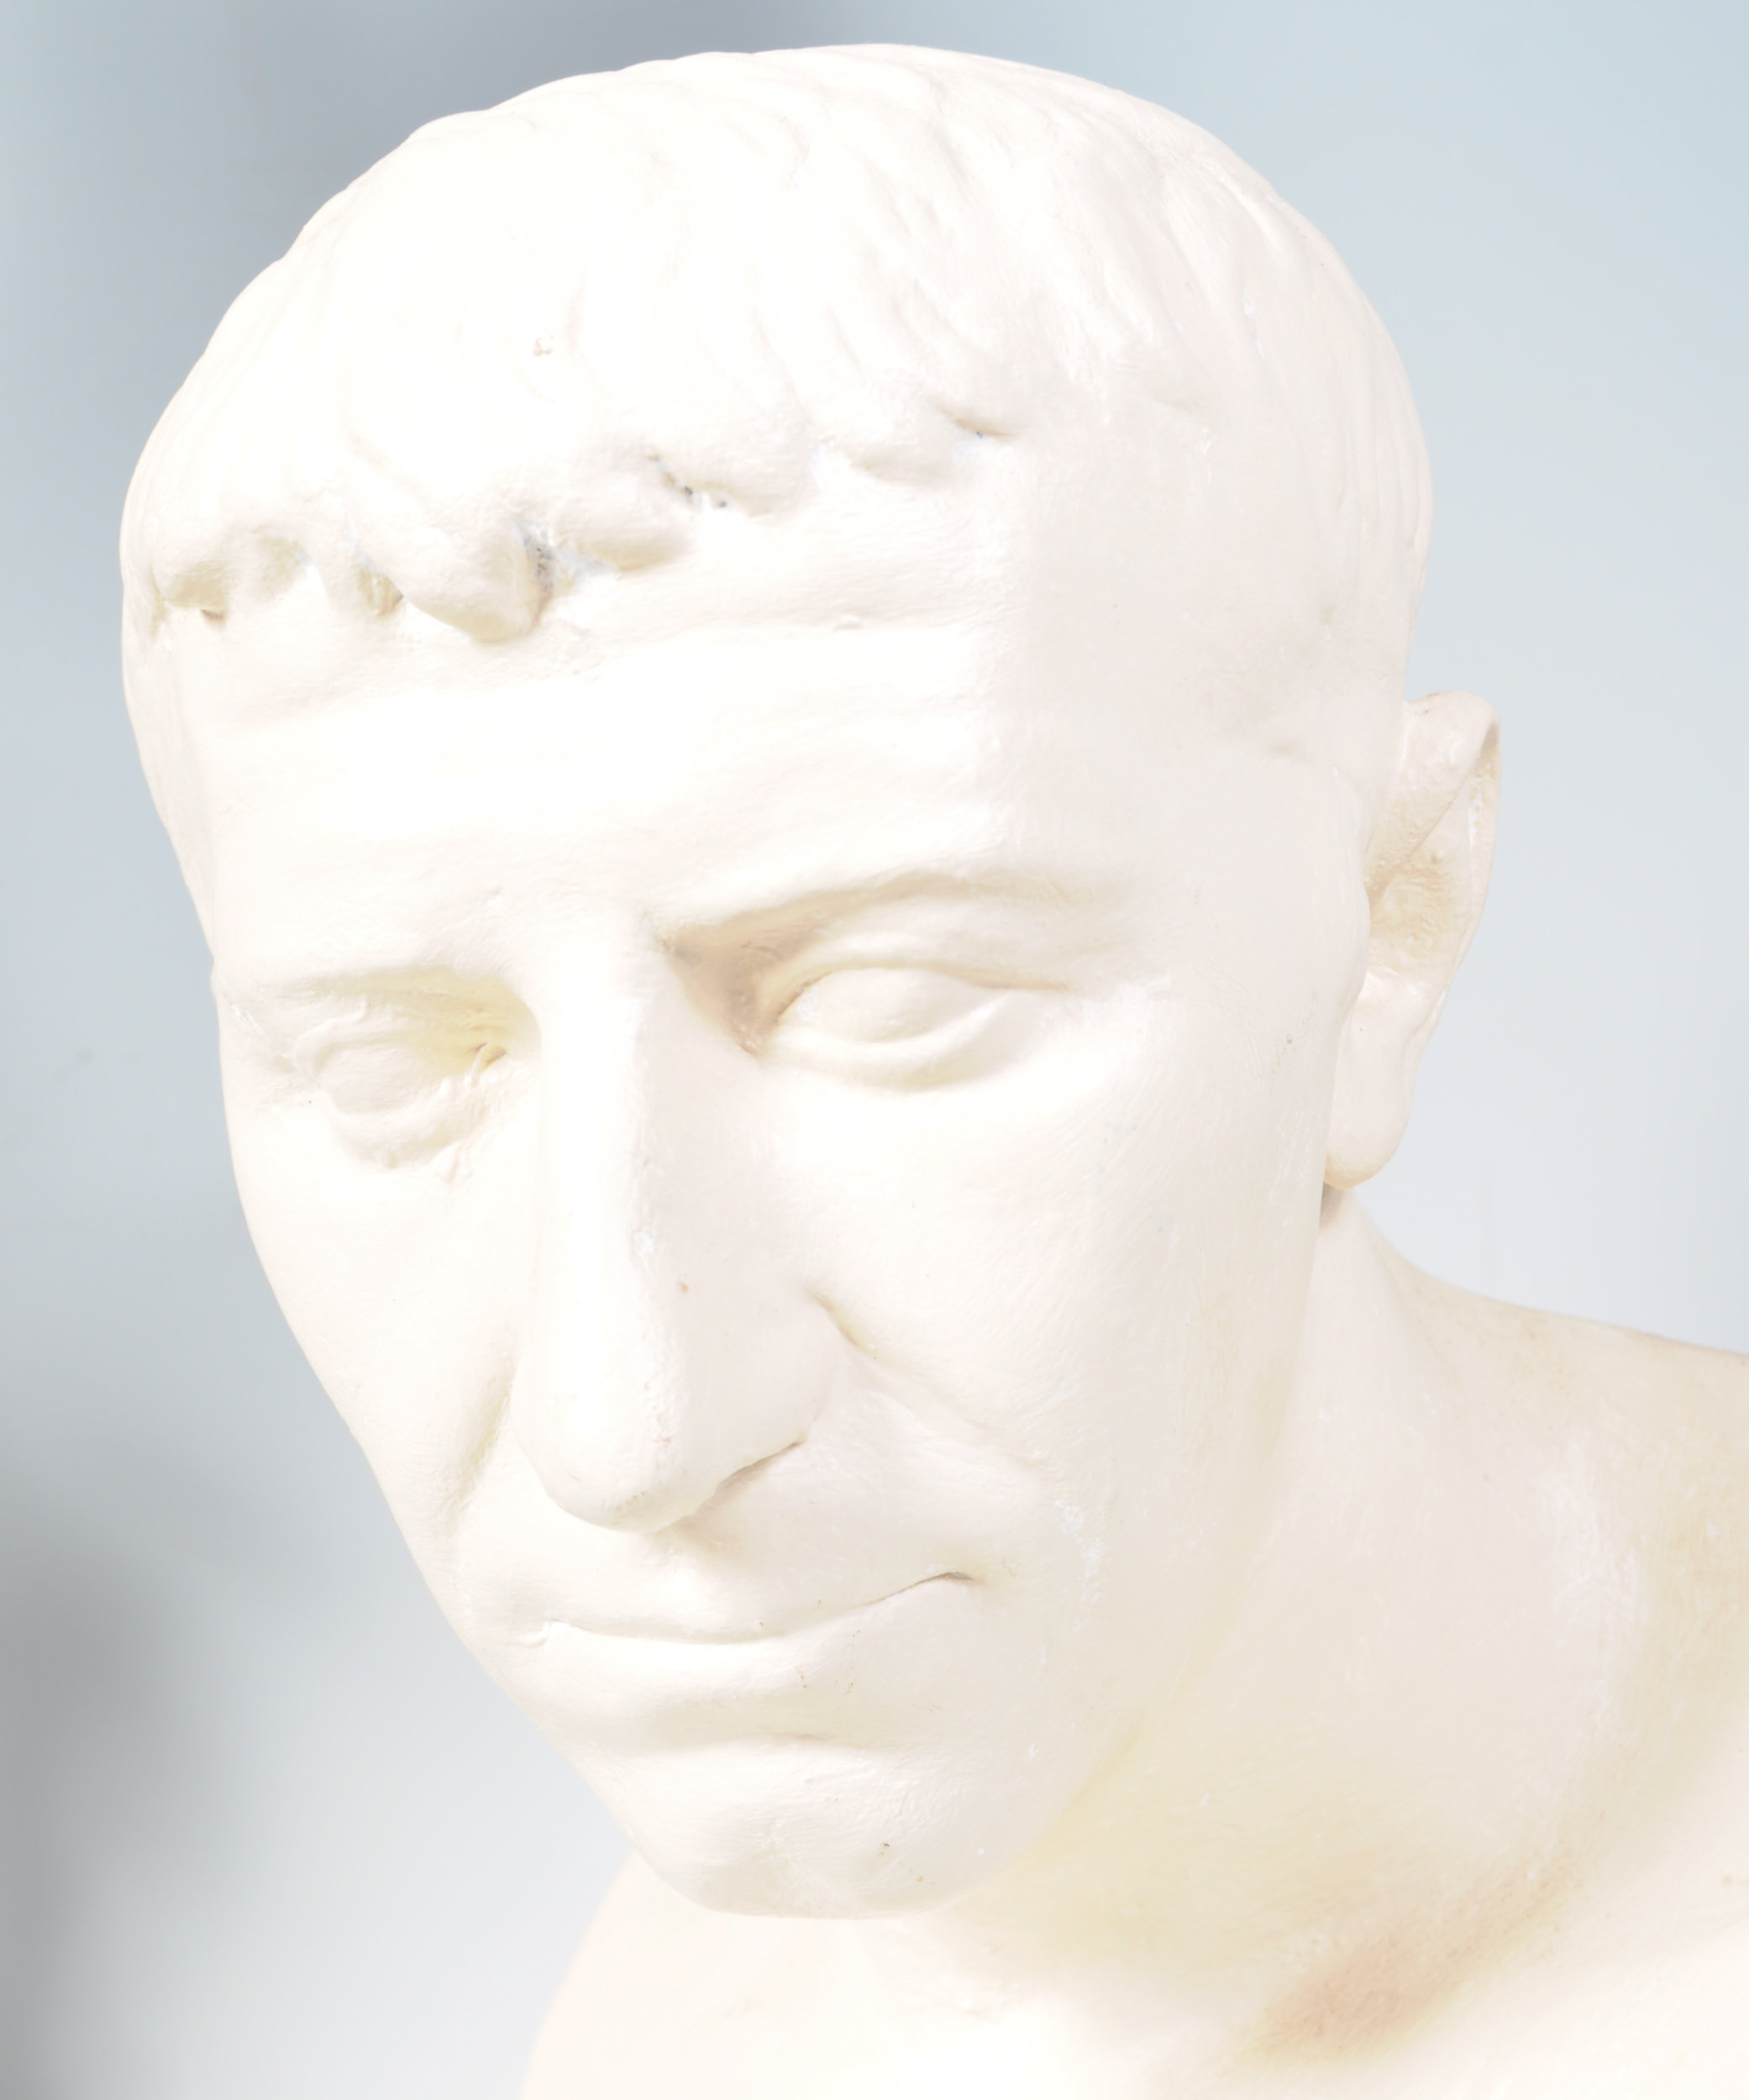 19TH CENTURY PLASTER BUST OF ROMAN EMPEROR JULIUS CAESAR - Image 3 of 7